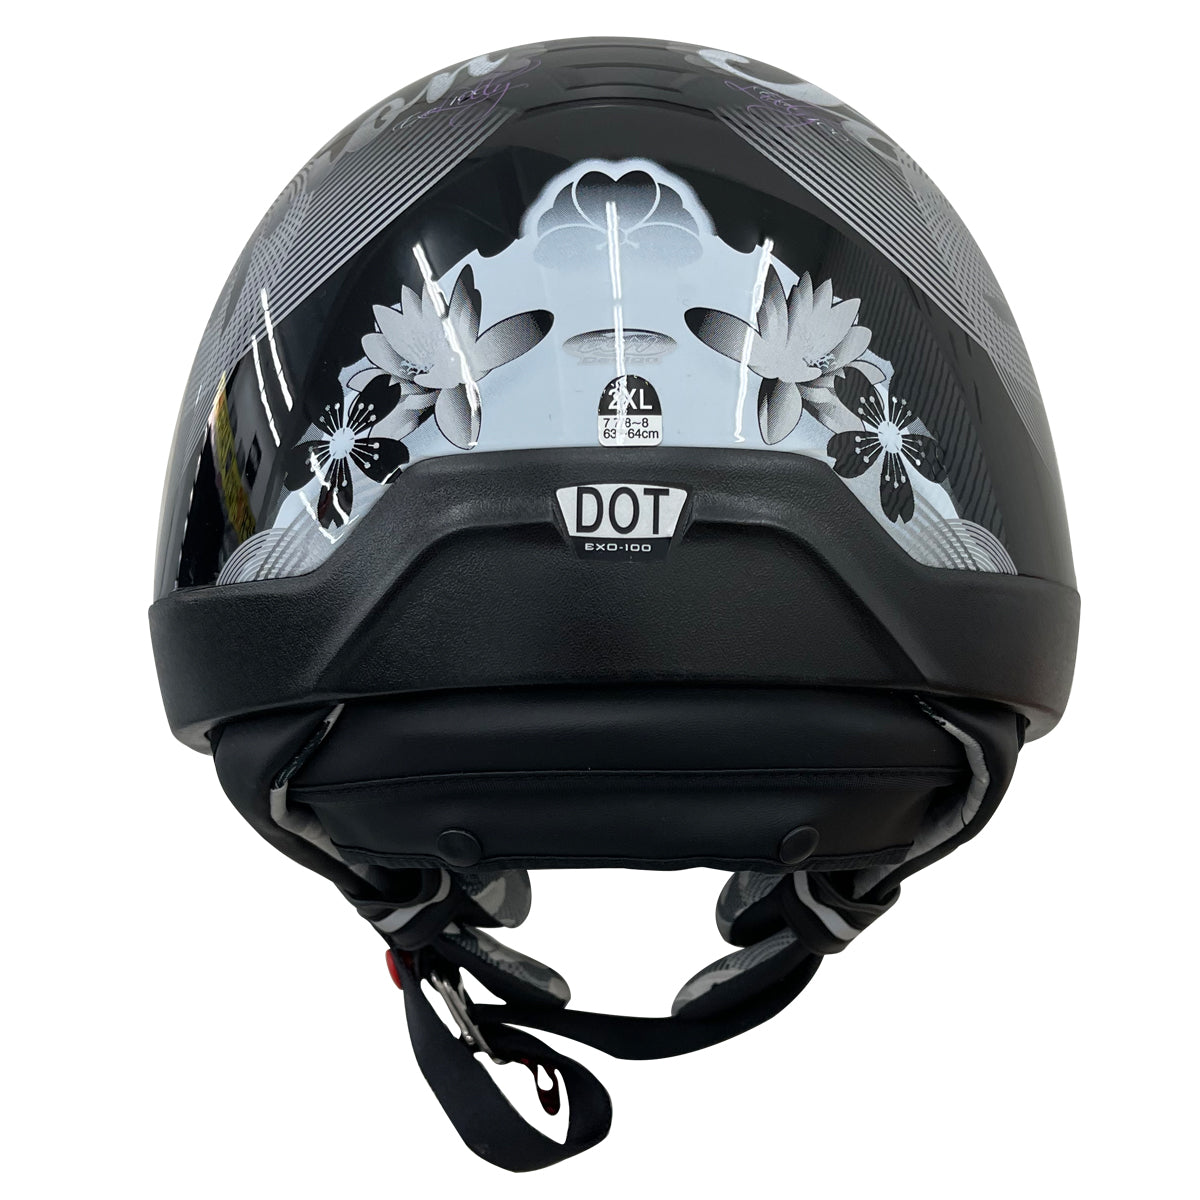 Outlaw Helmets T99 Silver Chrome German Style Motorcycle Half Helmet for Men & Women Dot Approved - Adult Unisex Skull Cap for Bike Scooter ATV UTV